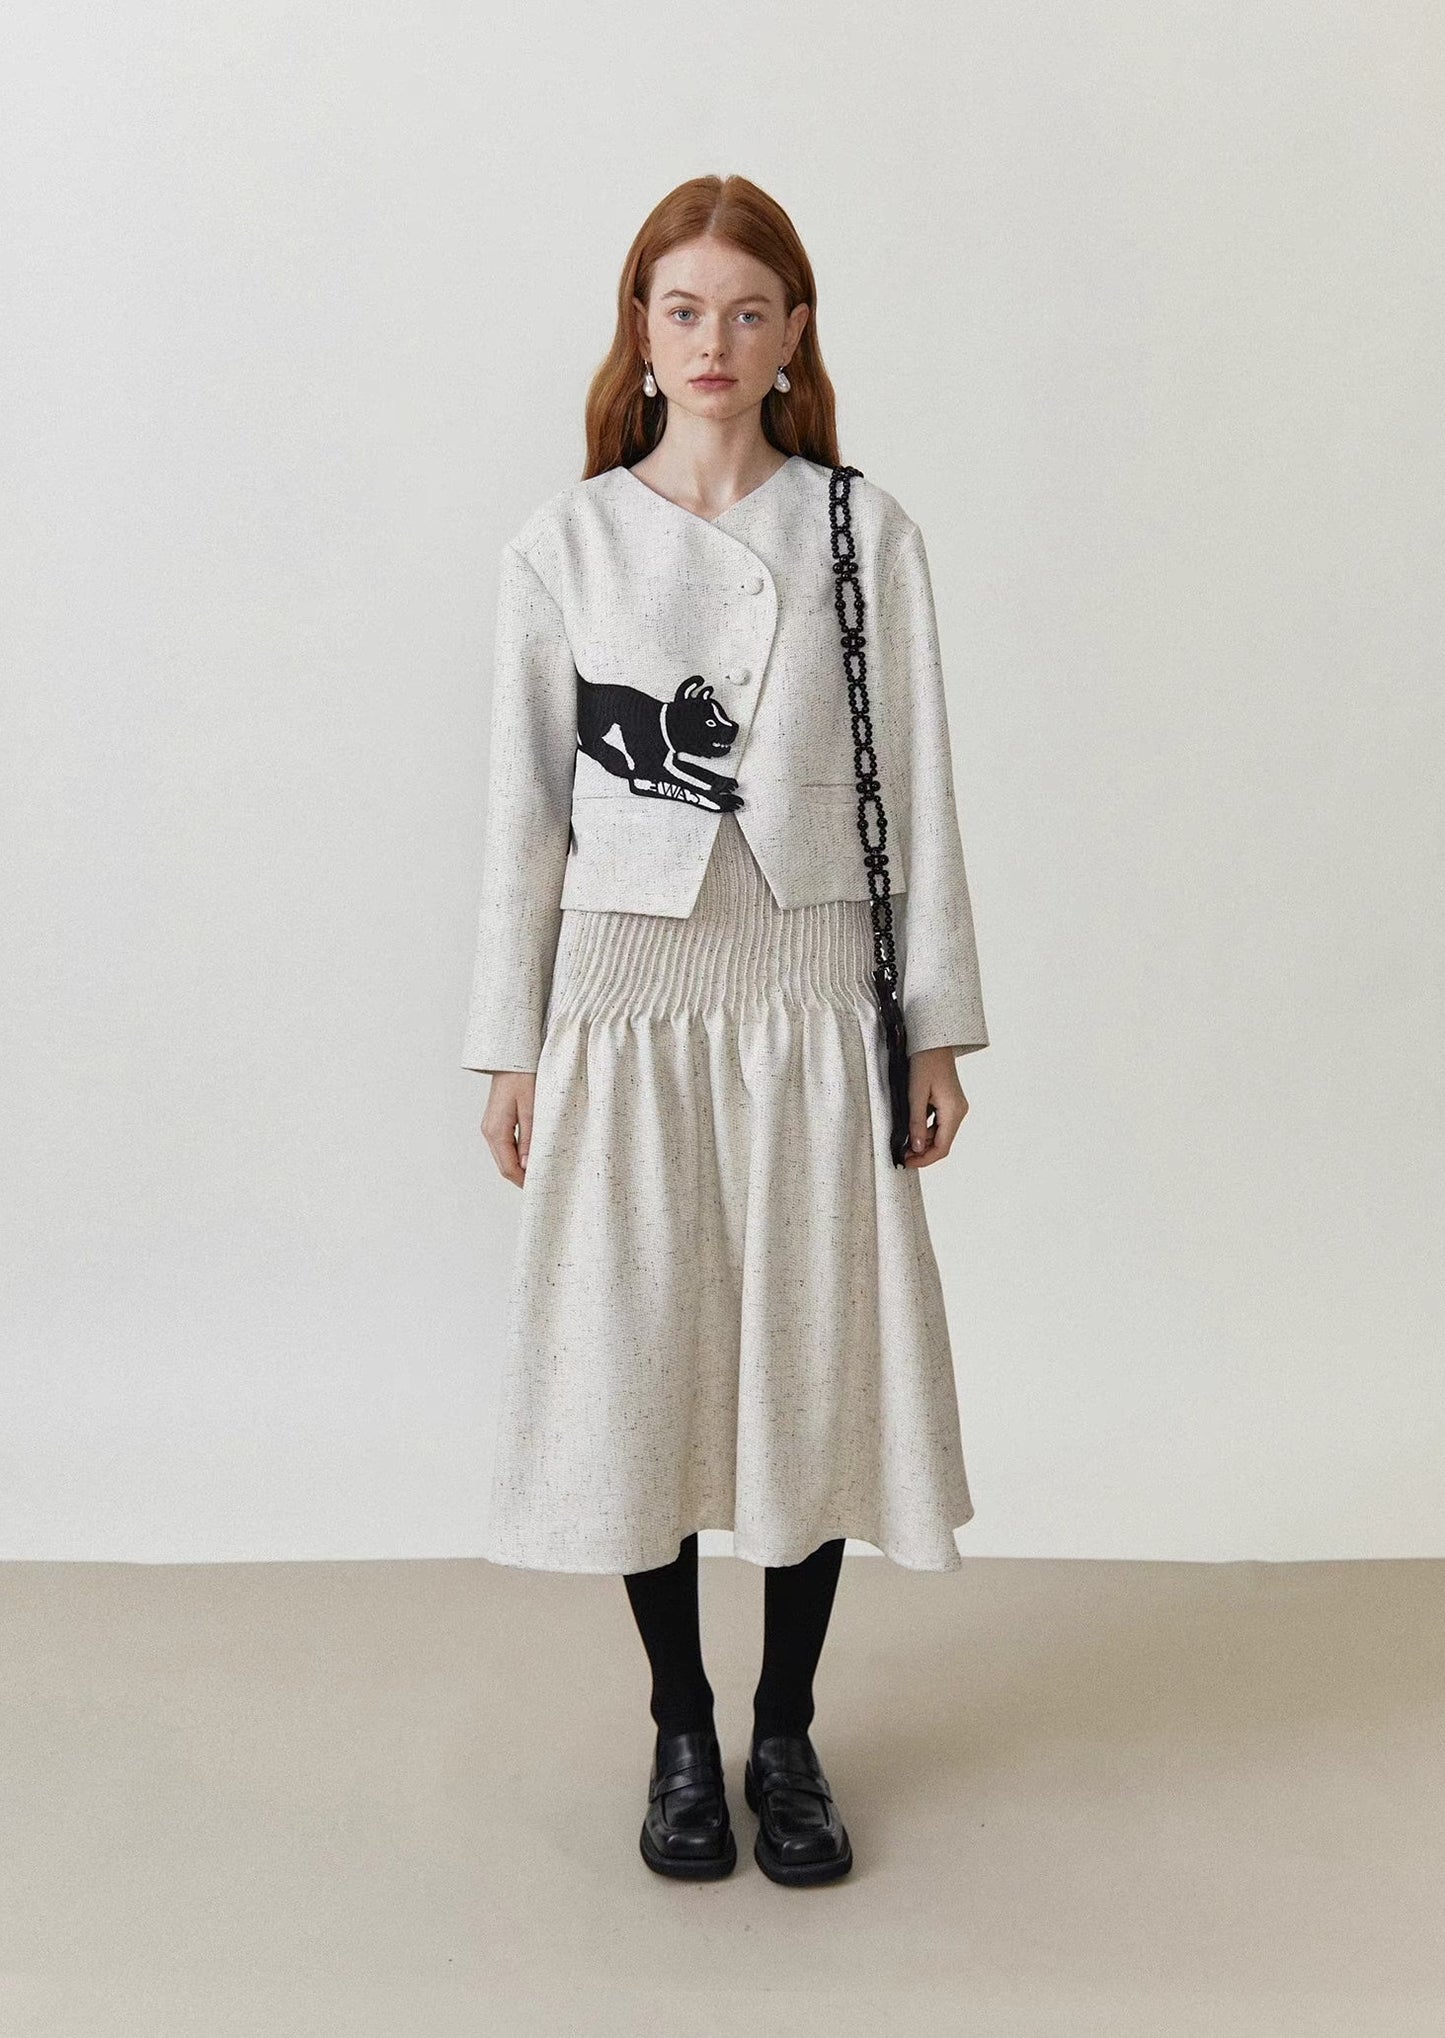 accordion pleated tweed mid-length skirt